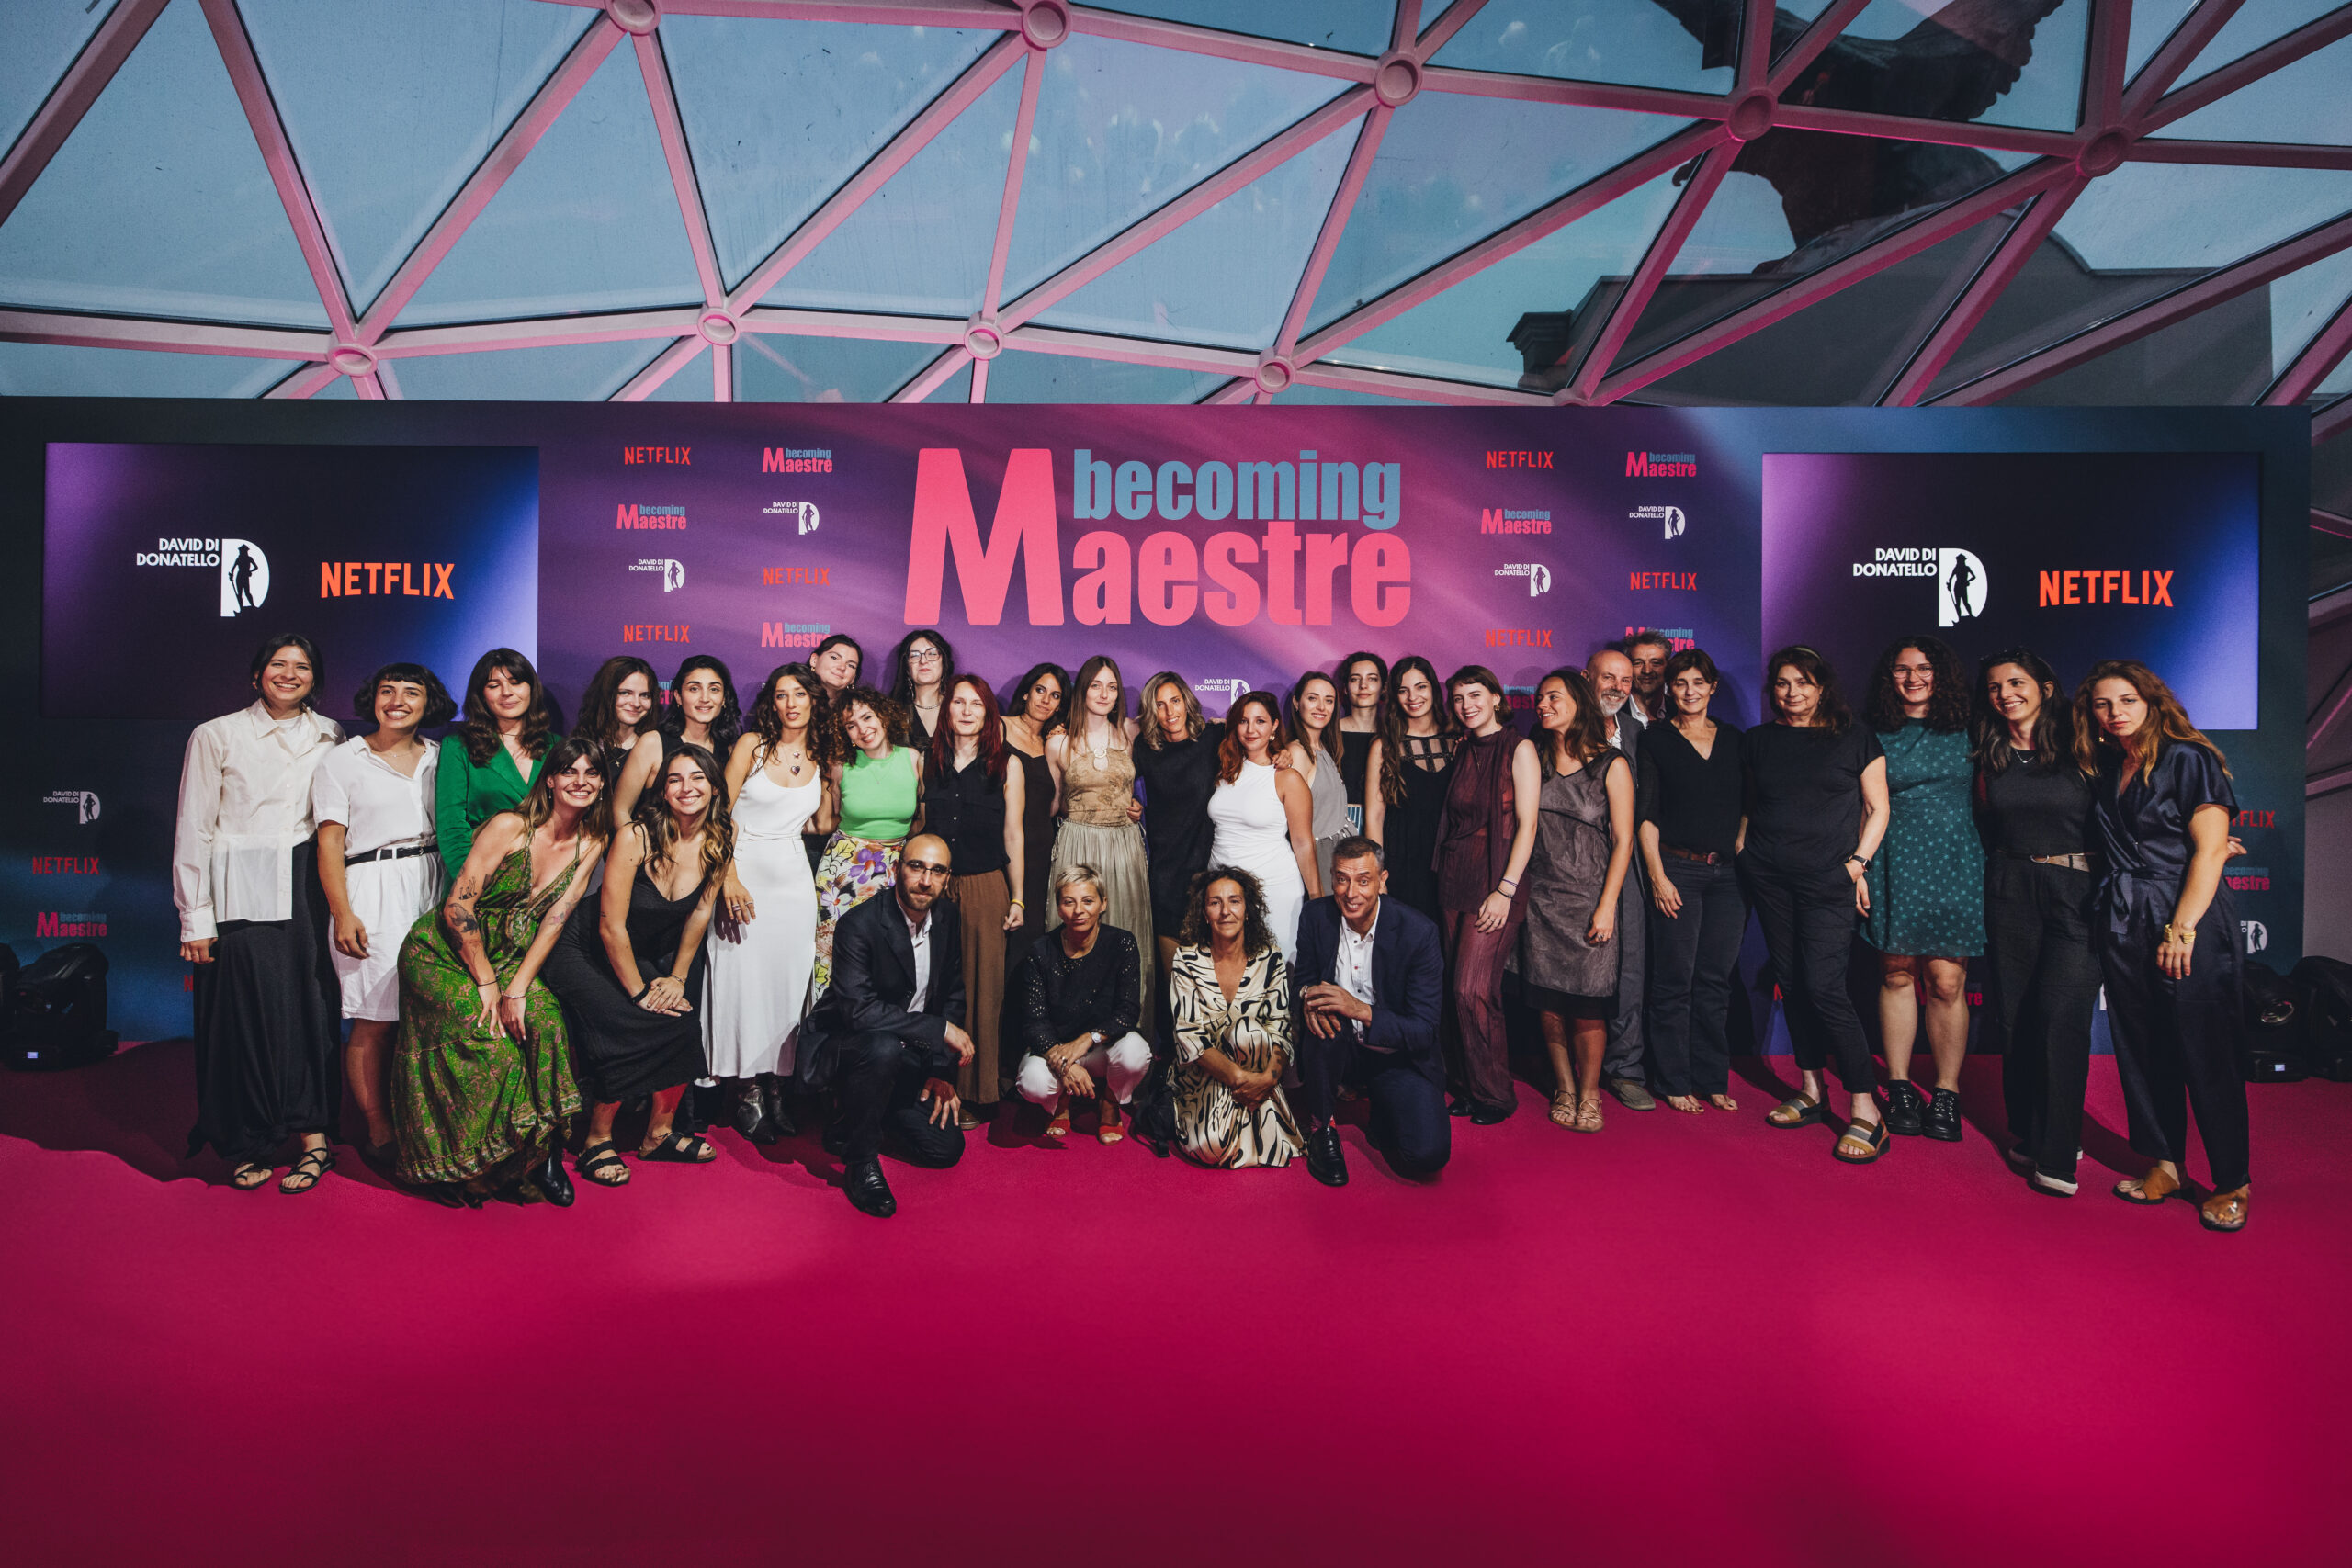 Le 24 ragazze e i rispettivi mentori della terza edizione del Becoming Maestre.